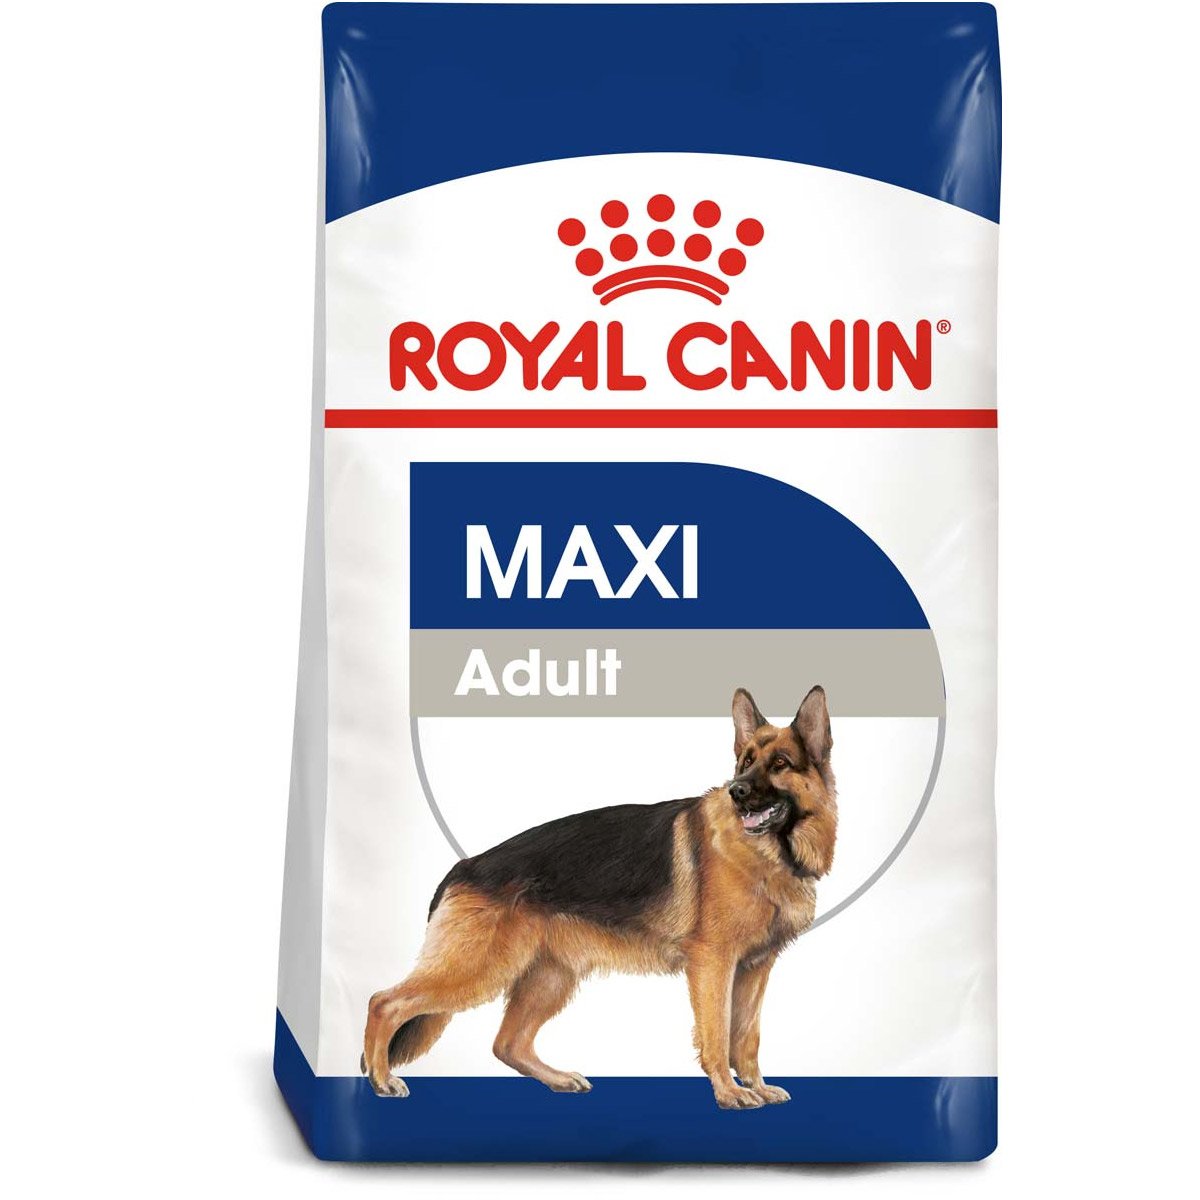 ROYAL CANIN MAXI Adult Trockenfutter für große Hunde 4kg von Royal Canin